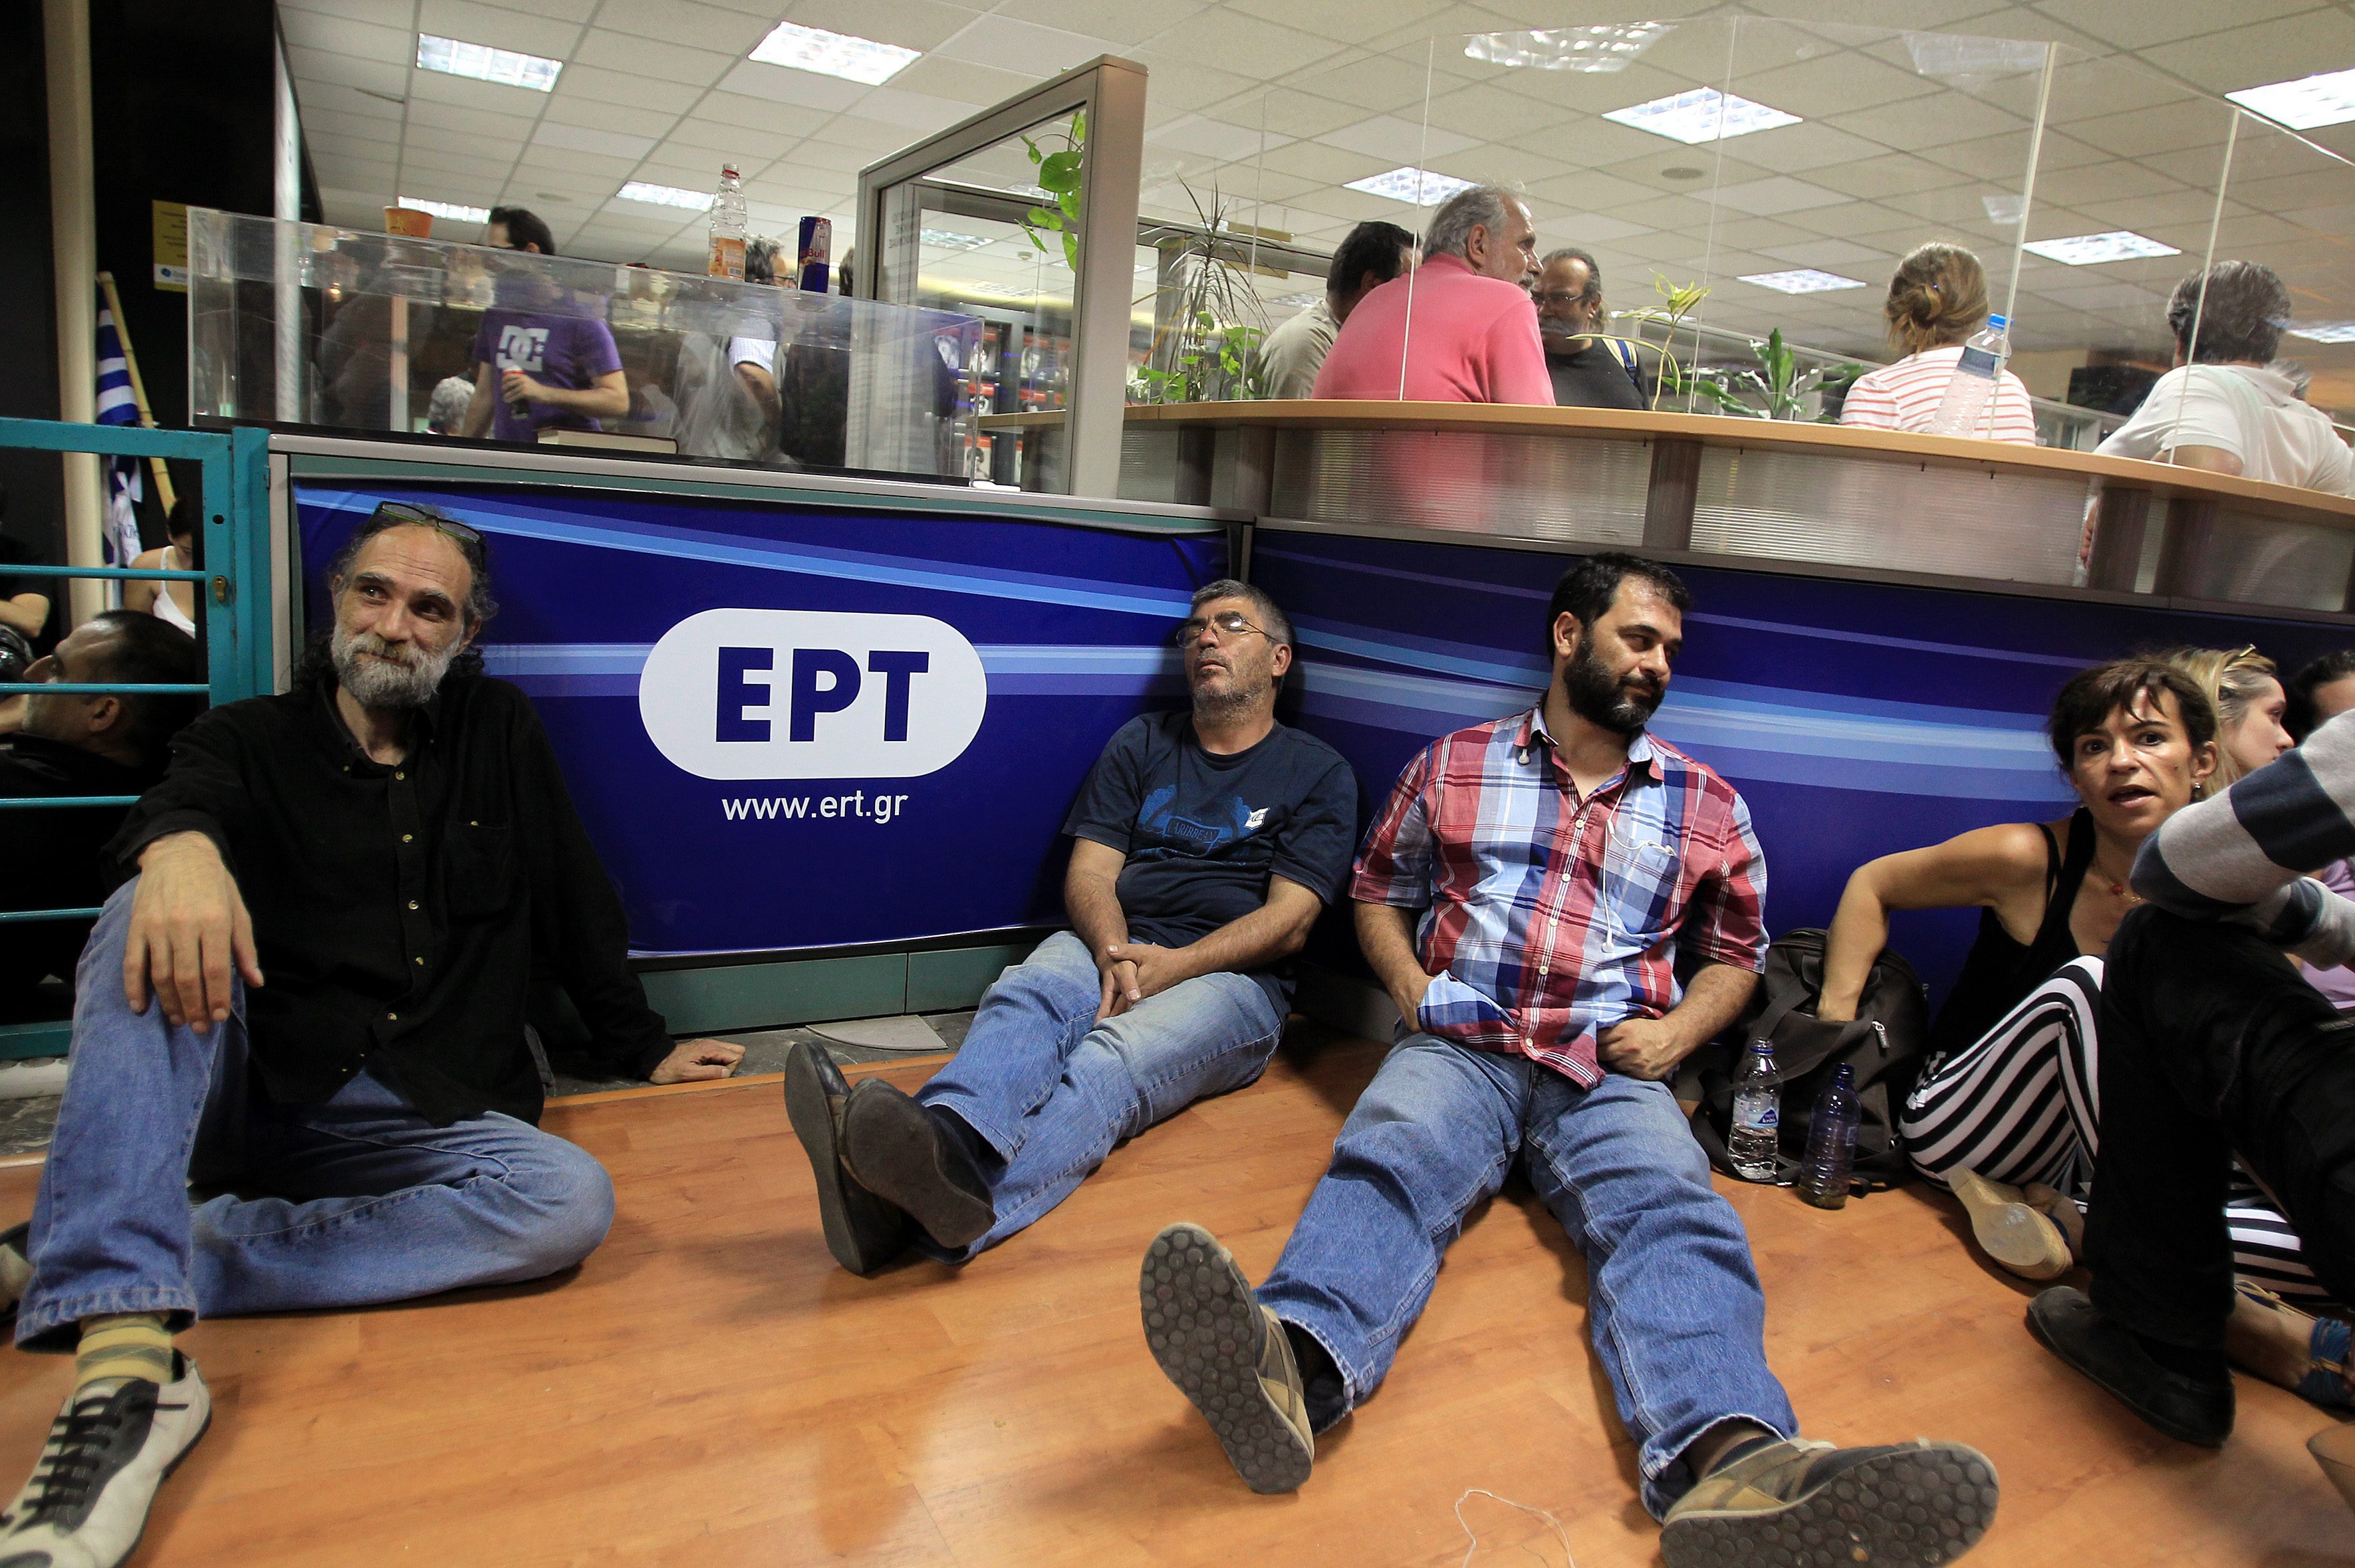 Гърция закри държавните радио и телевизия